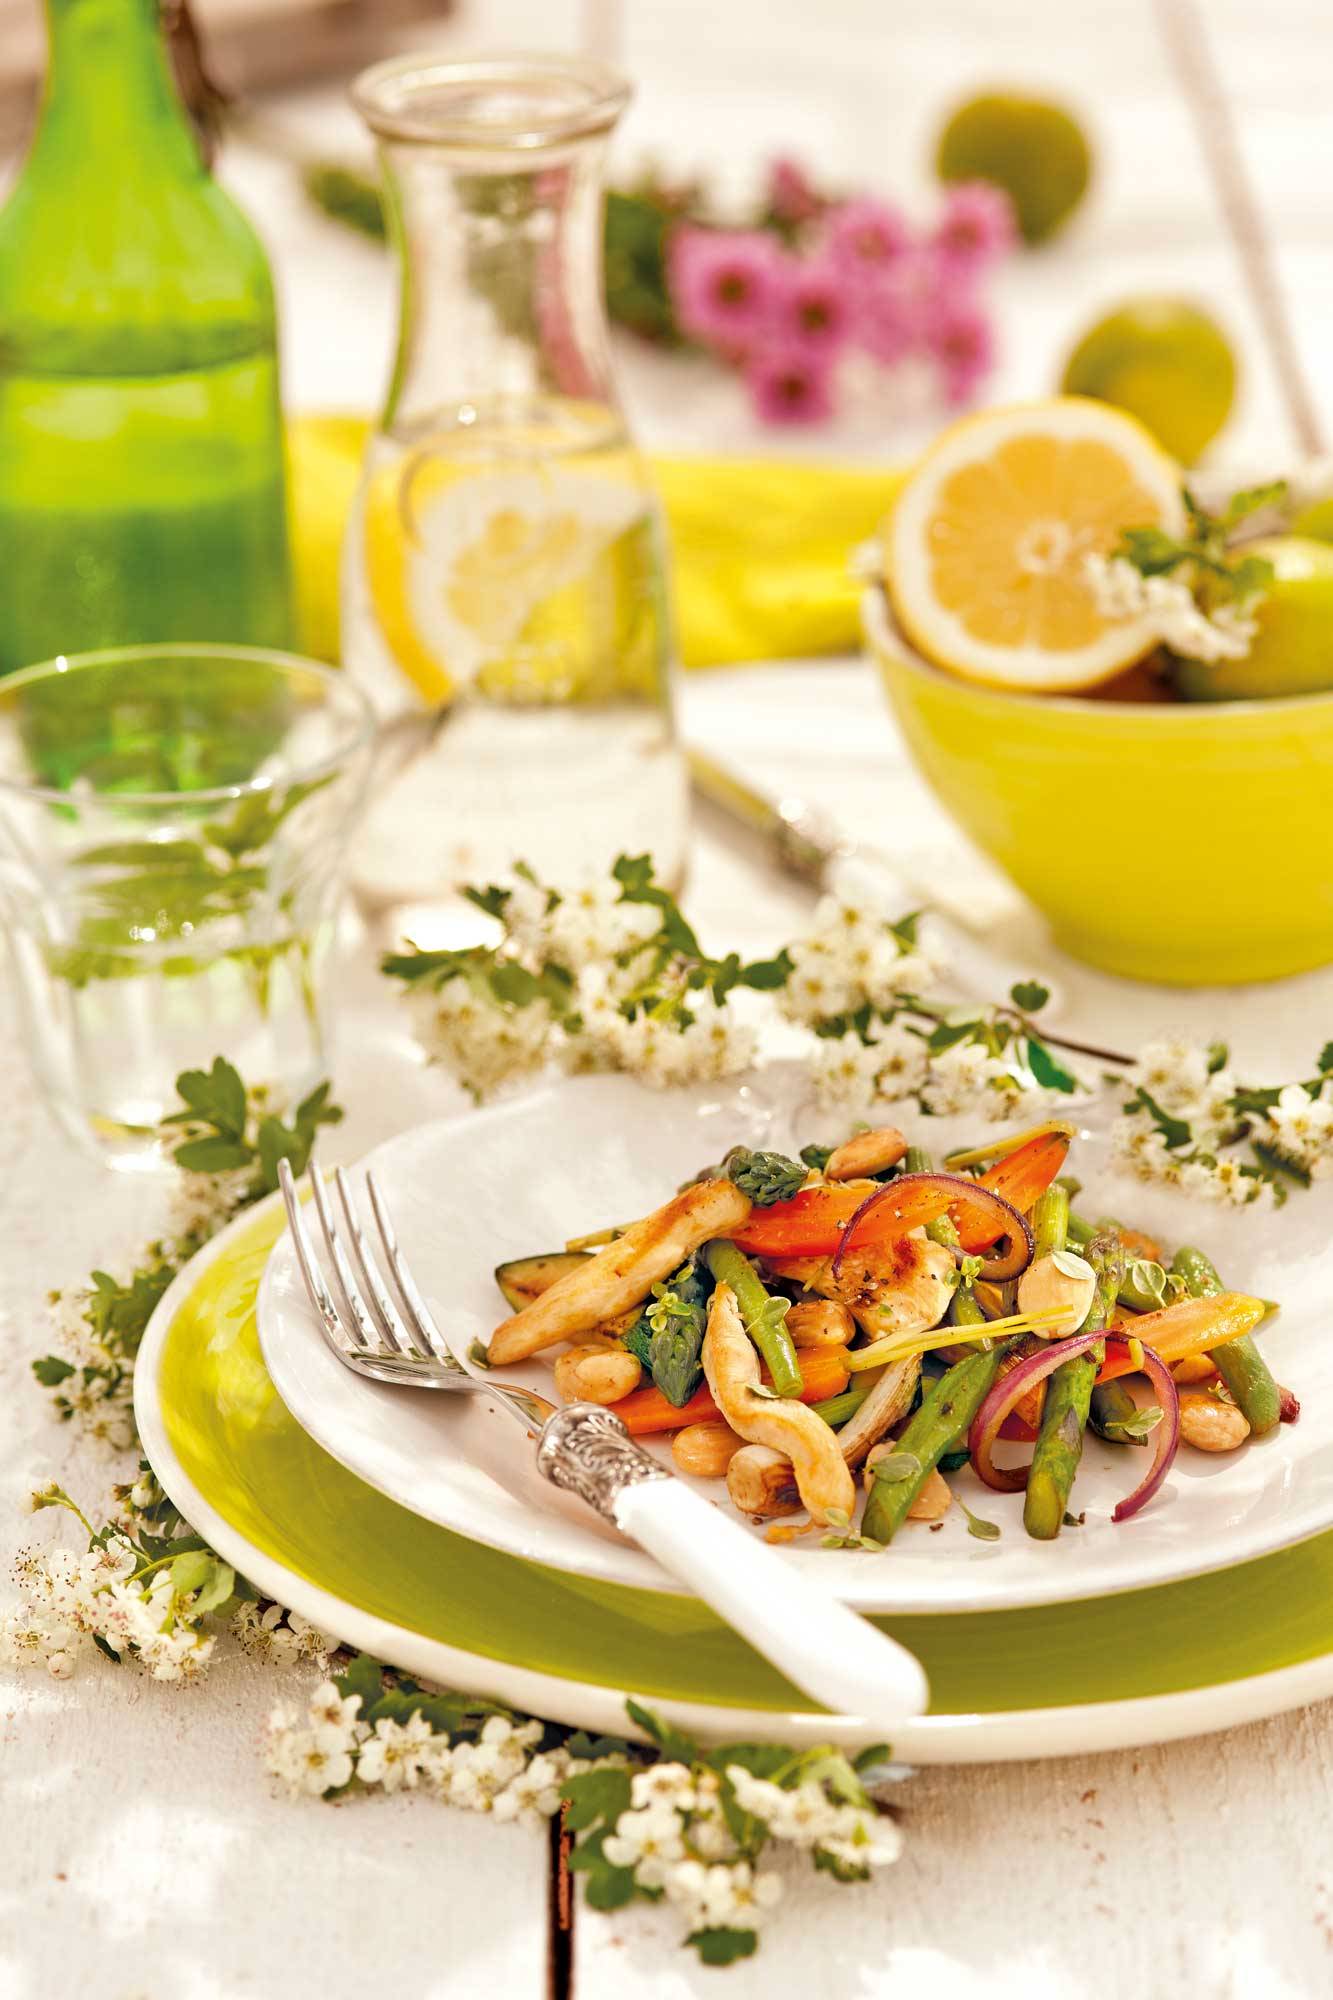 Receta saludable: pollo salteado con verduras y almendras. 